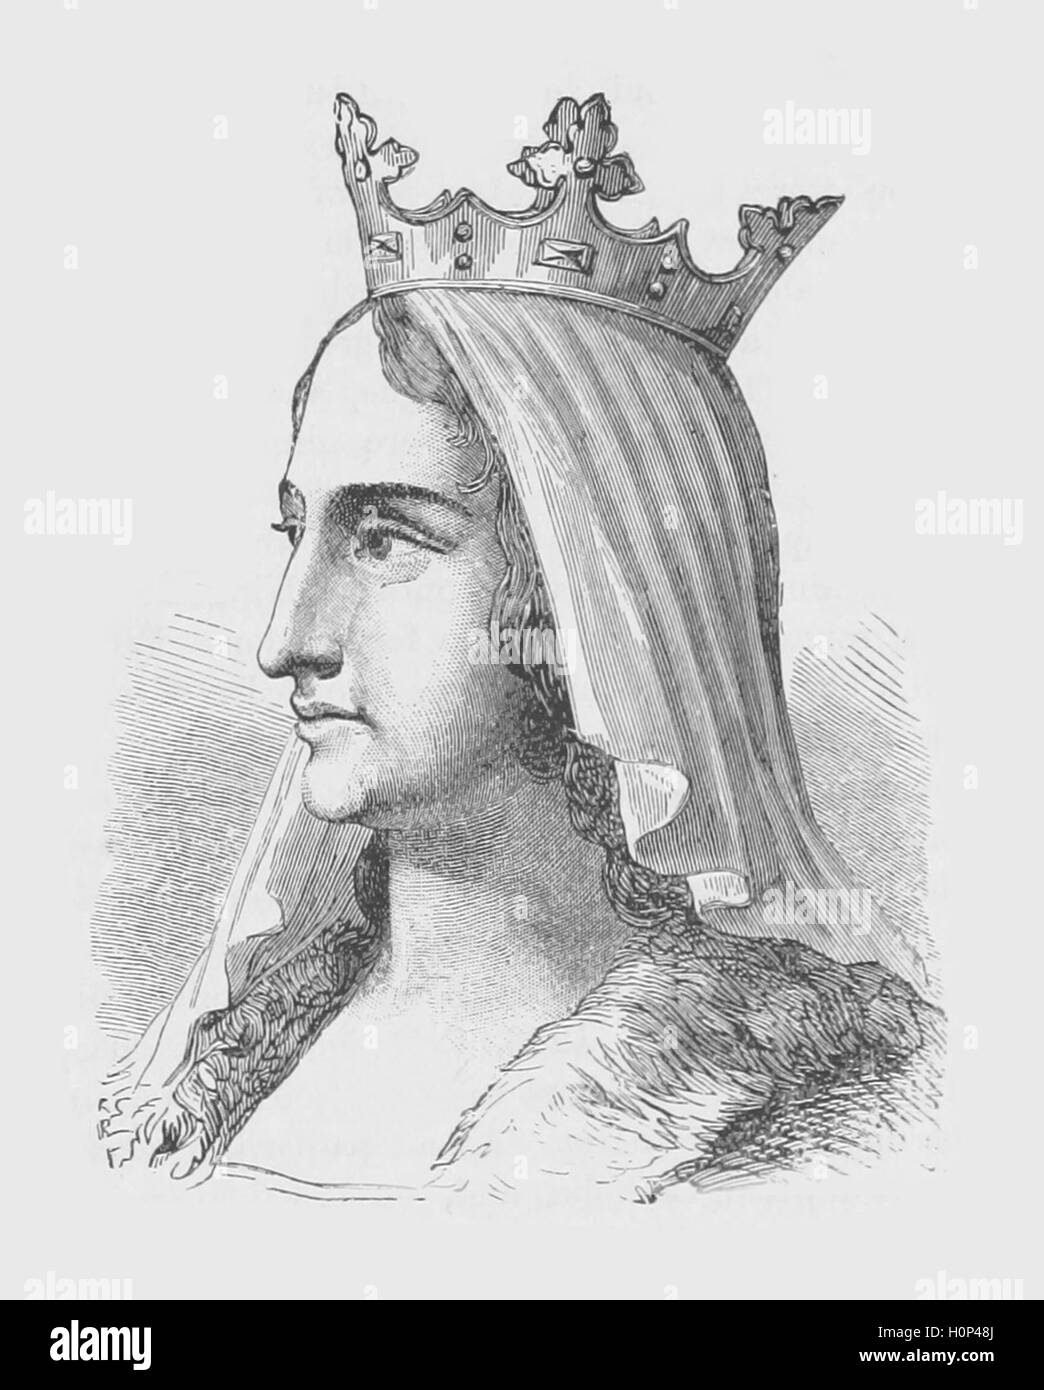 Blanca de Castilla Blanca de Castilla era la reina de Francia como la esposa de Luis VIII. Ella actuó como regente en dos ocasiones durante el reinado de su hijo, Louis IX. Imagen procedente de Cassell's ilustra la historia universal (1893). Foto de stock